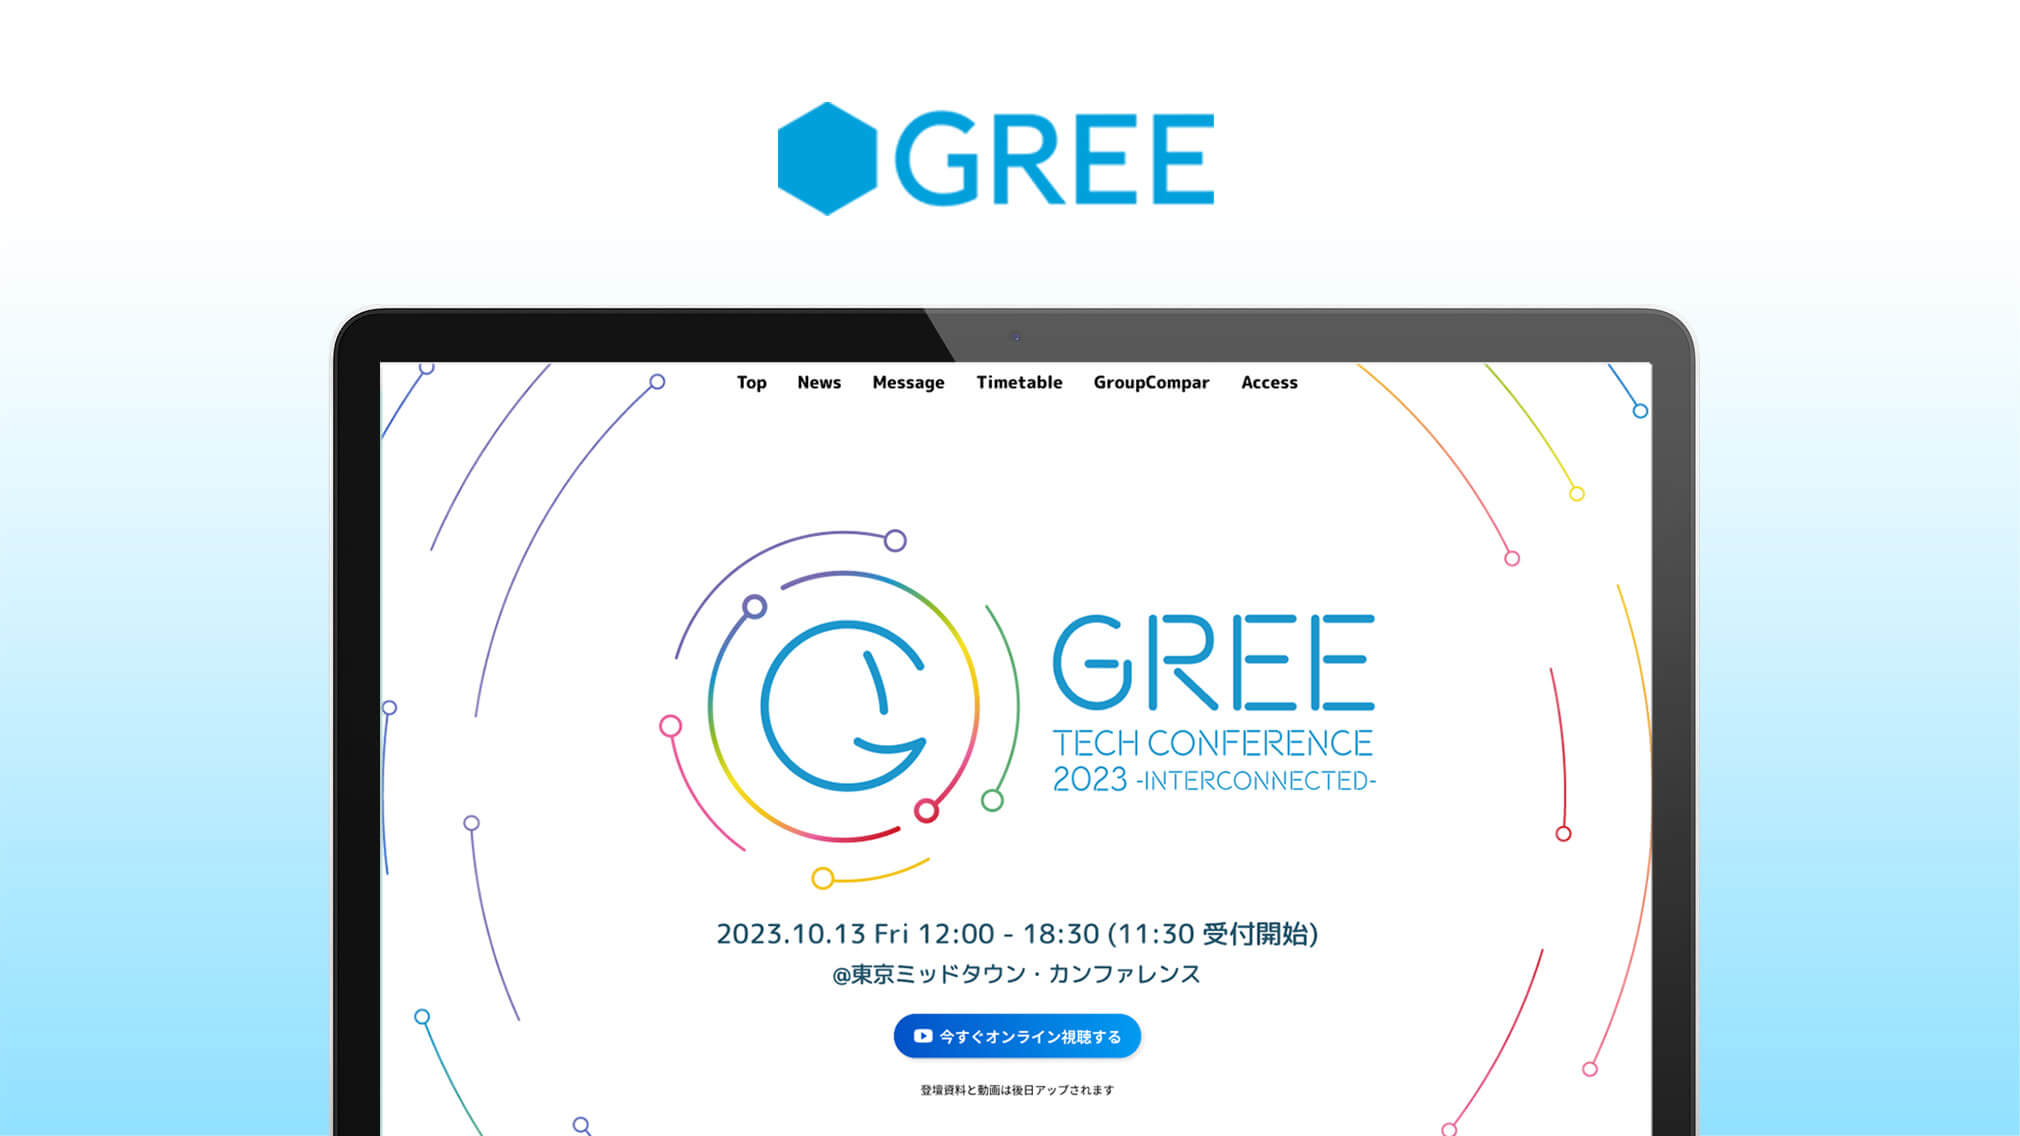 グリー株式会社様の「GREE Tech Conference 2023」のロゴ、LP、SNS用画像、アタック動画を制作いたしました